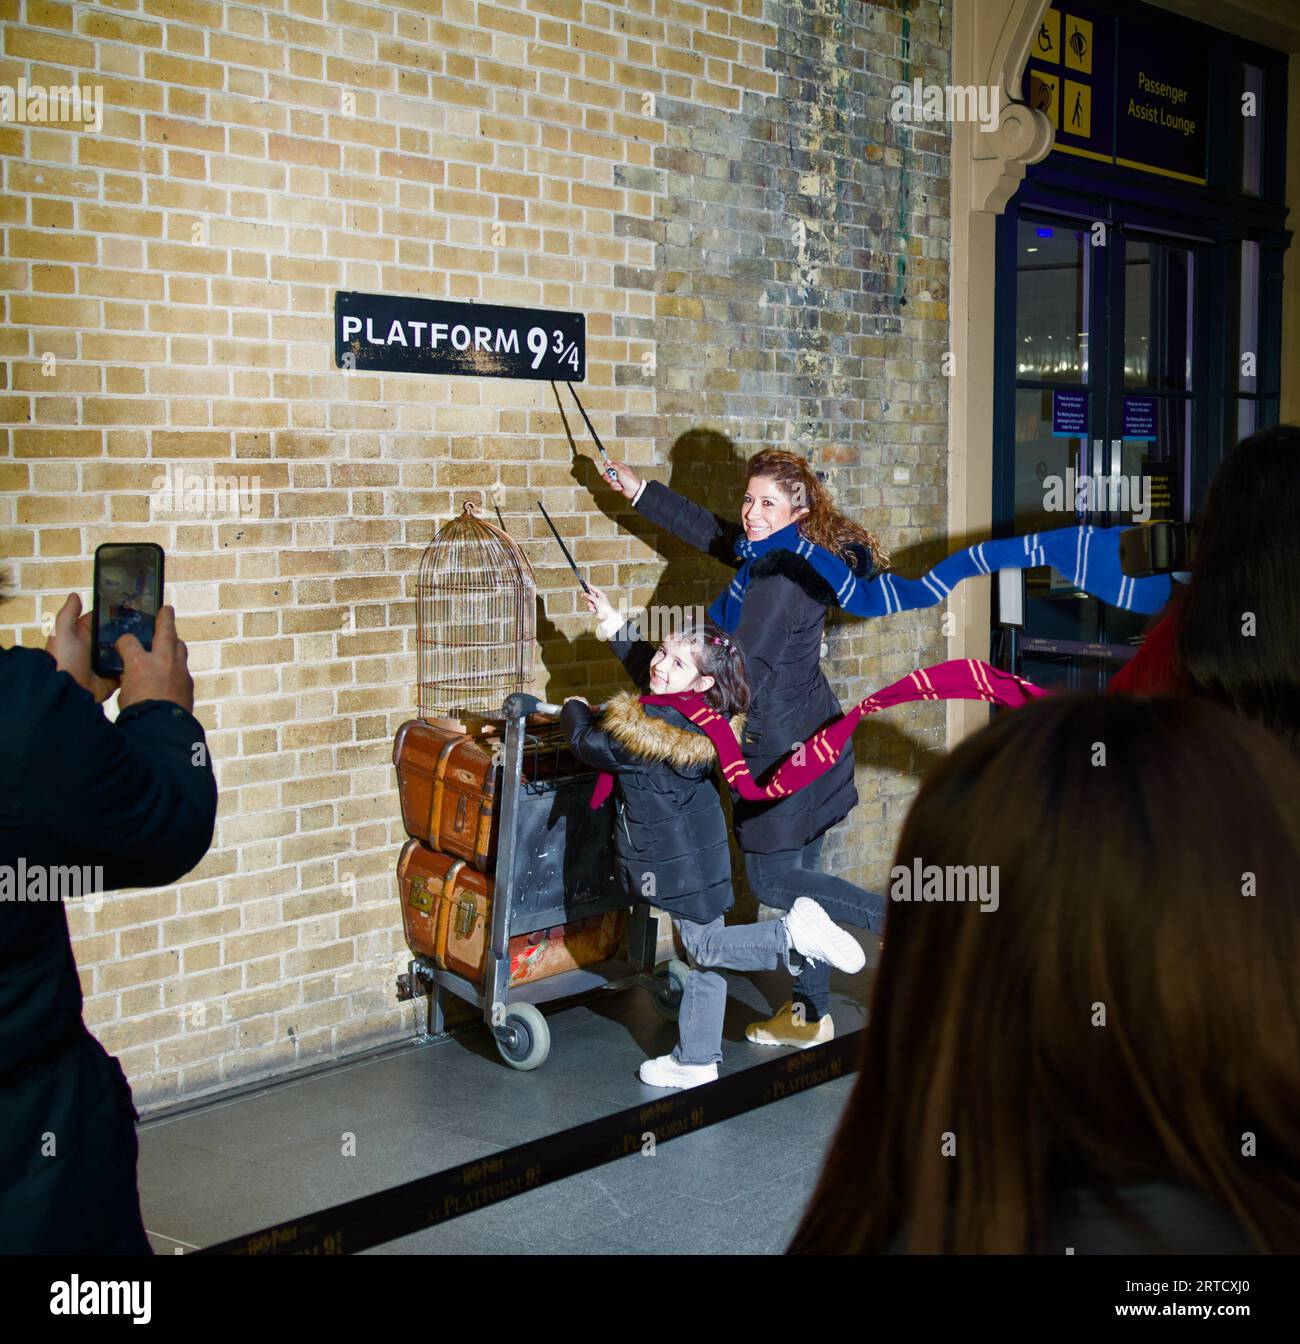 Mère et fille ayant leur photographie prise à Harry Potters Platform 9 3/4, Kings Cross Station, Londres Royaume-Uni Banque D'Images